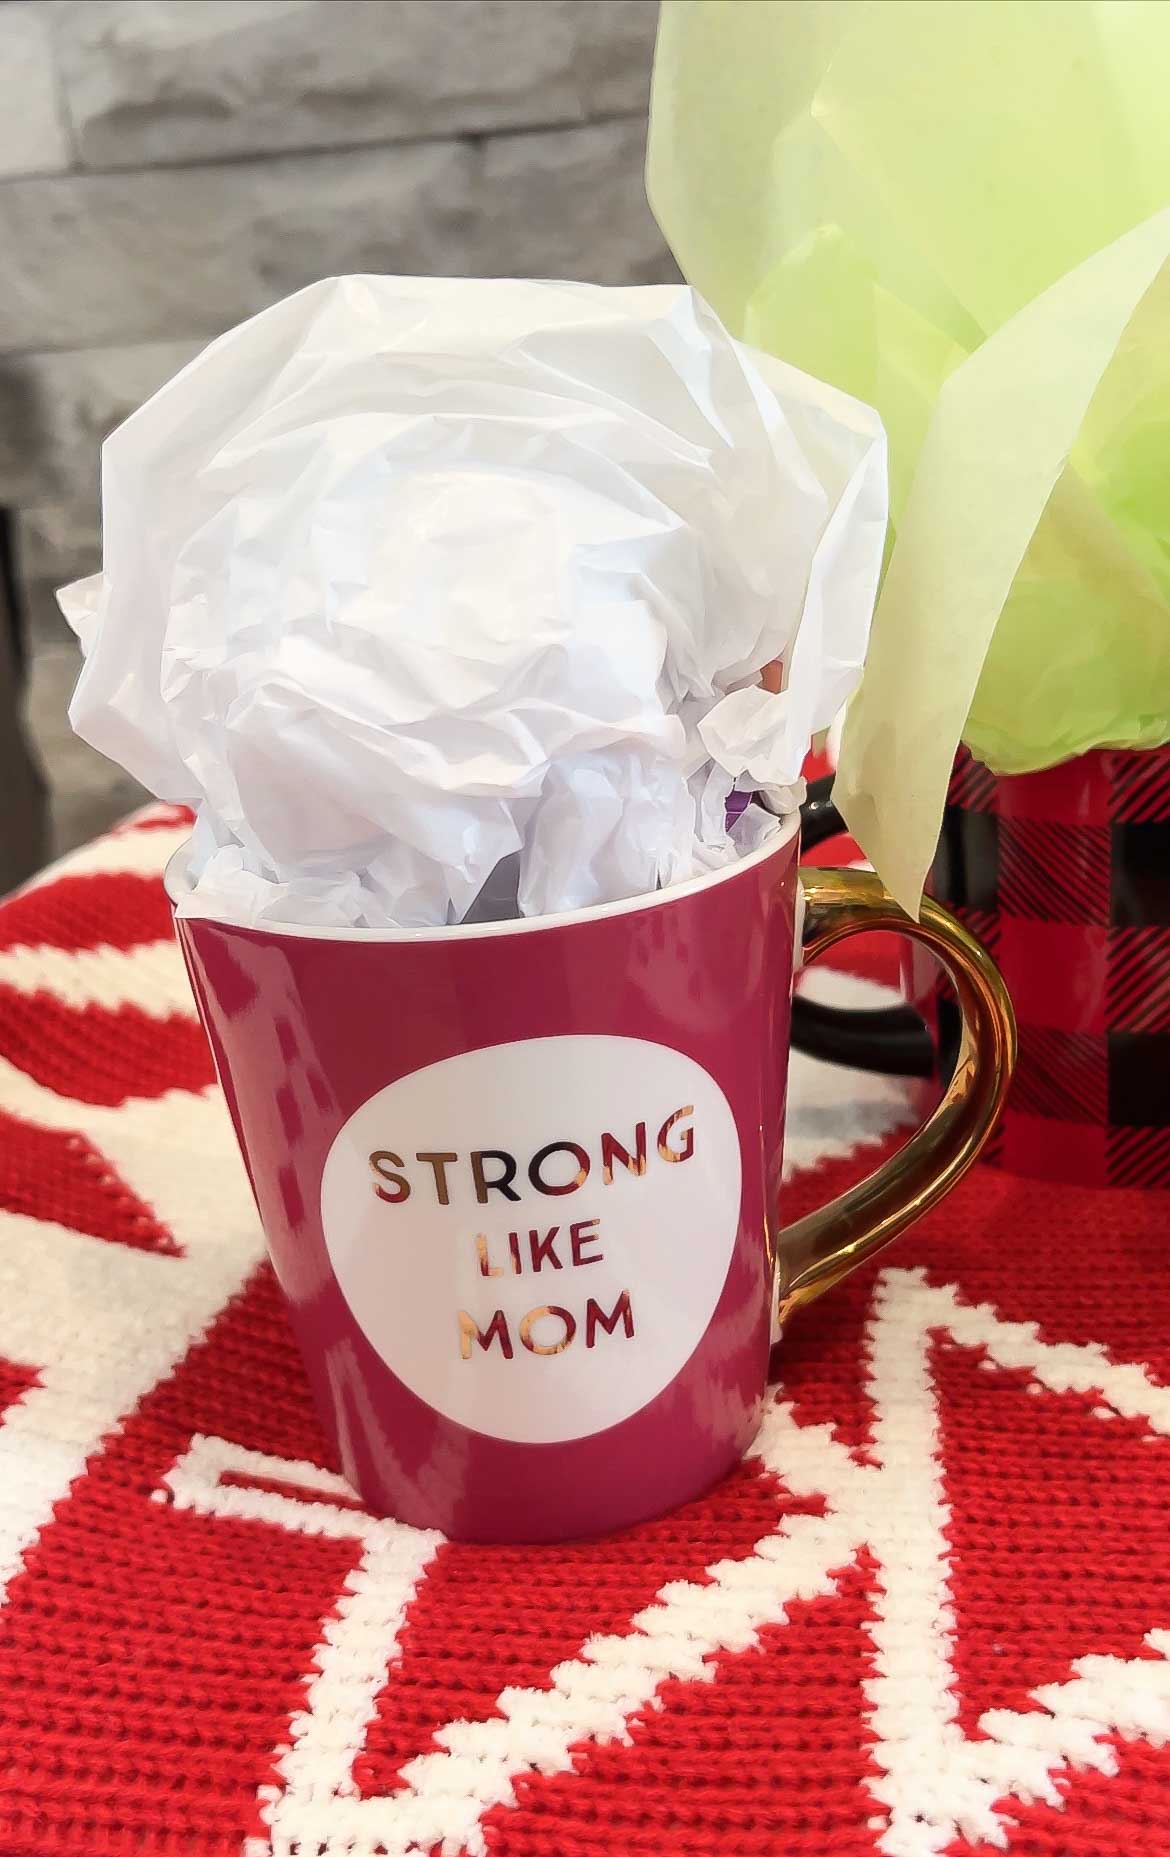 strong like mom mug filed with gifts